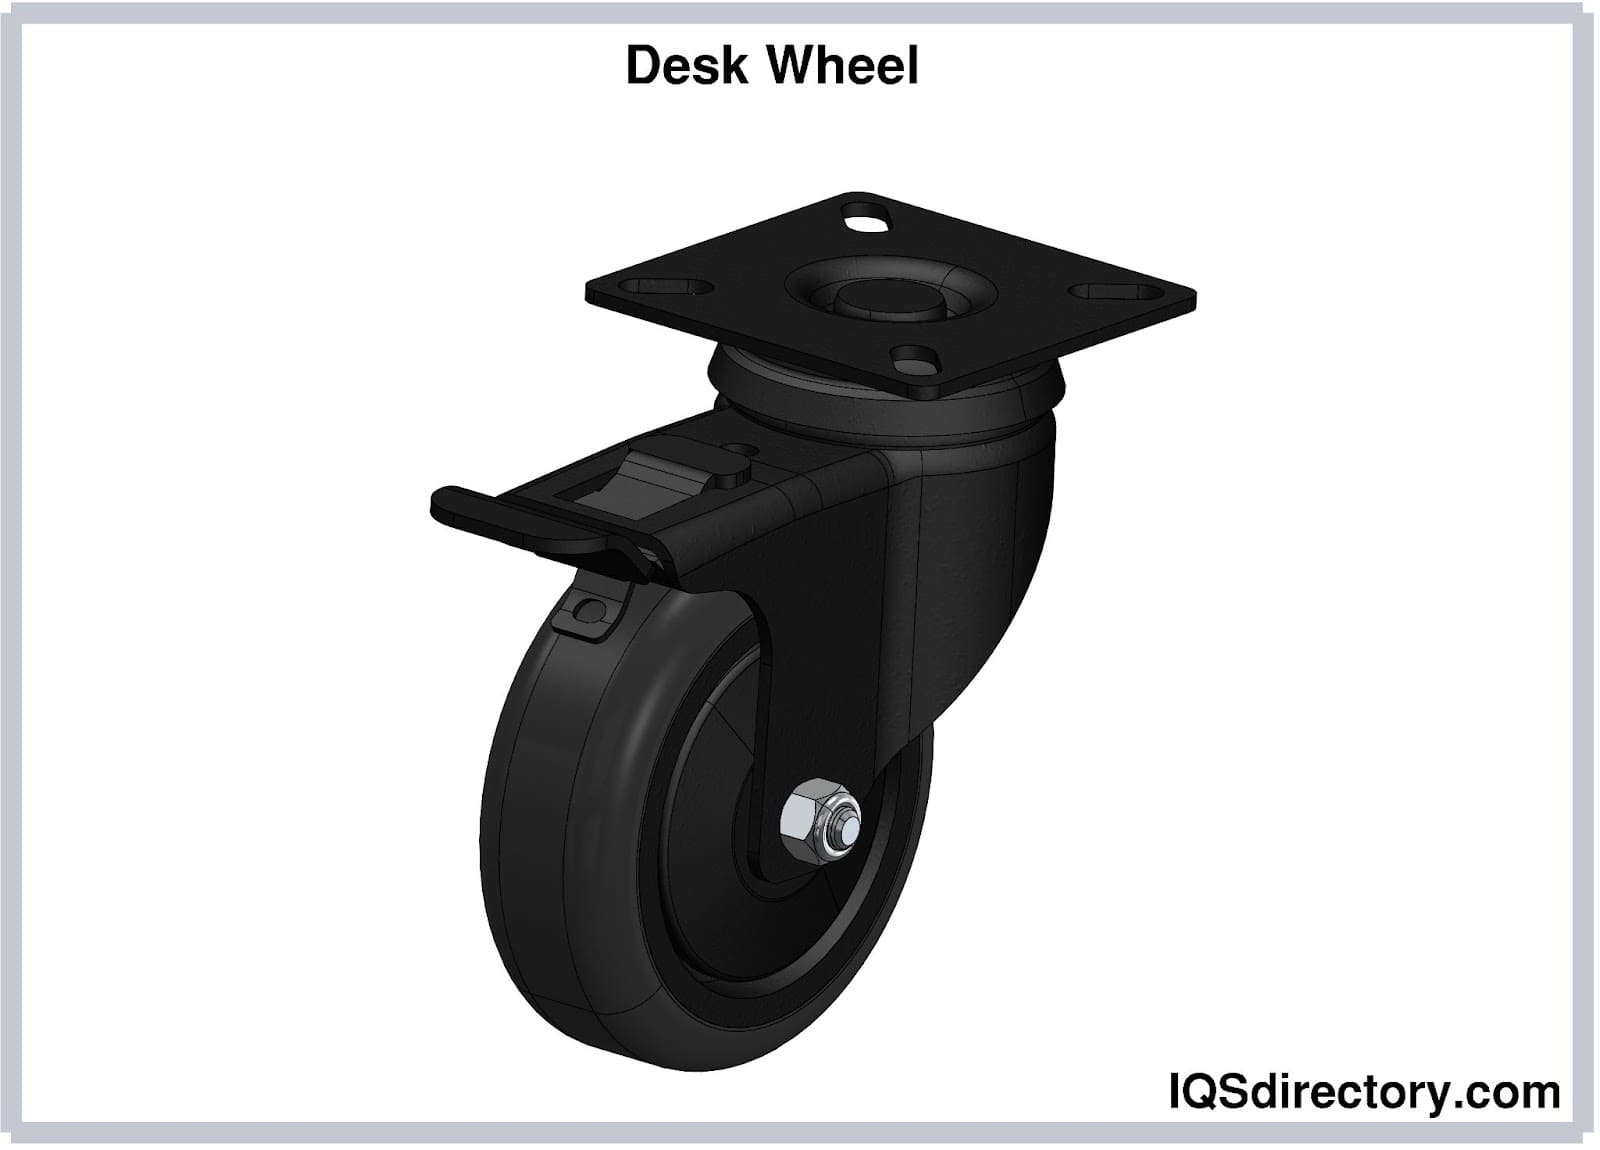 Desk Wheel